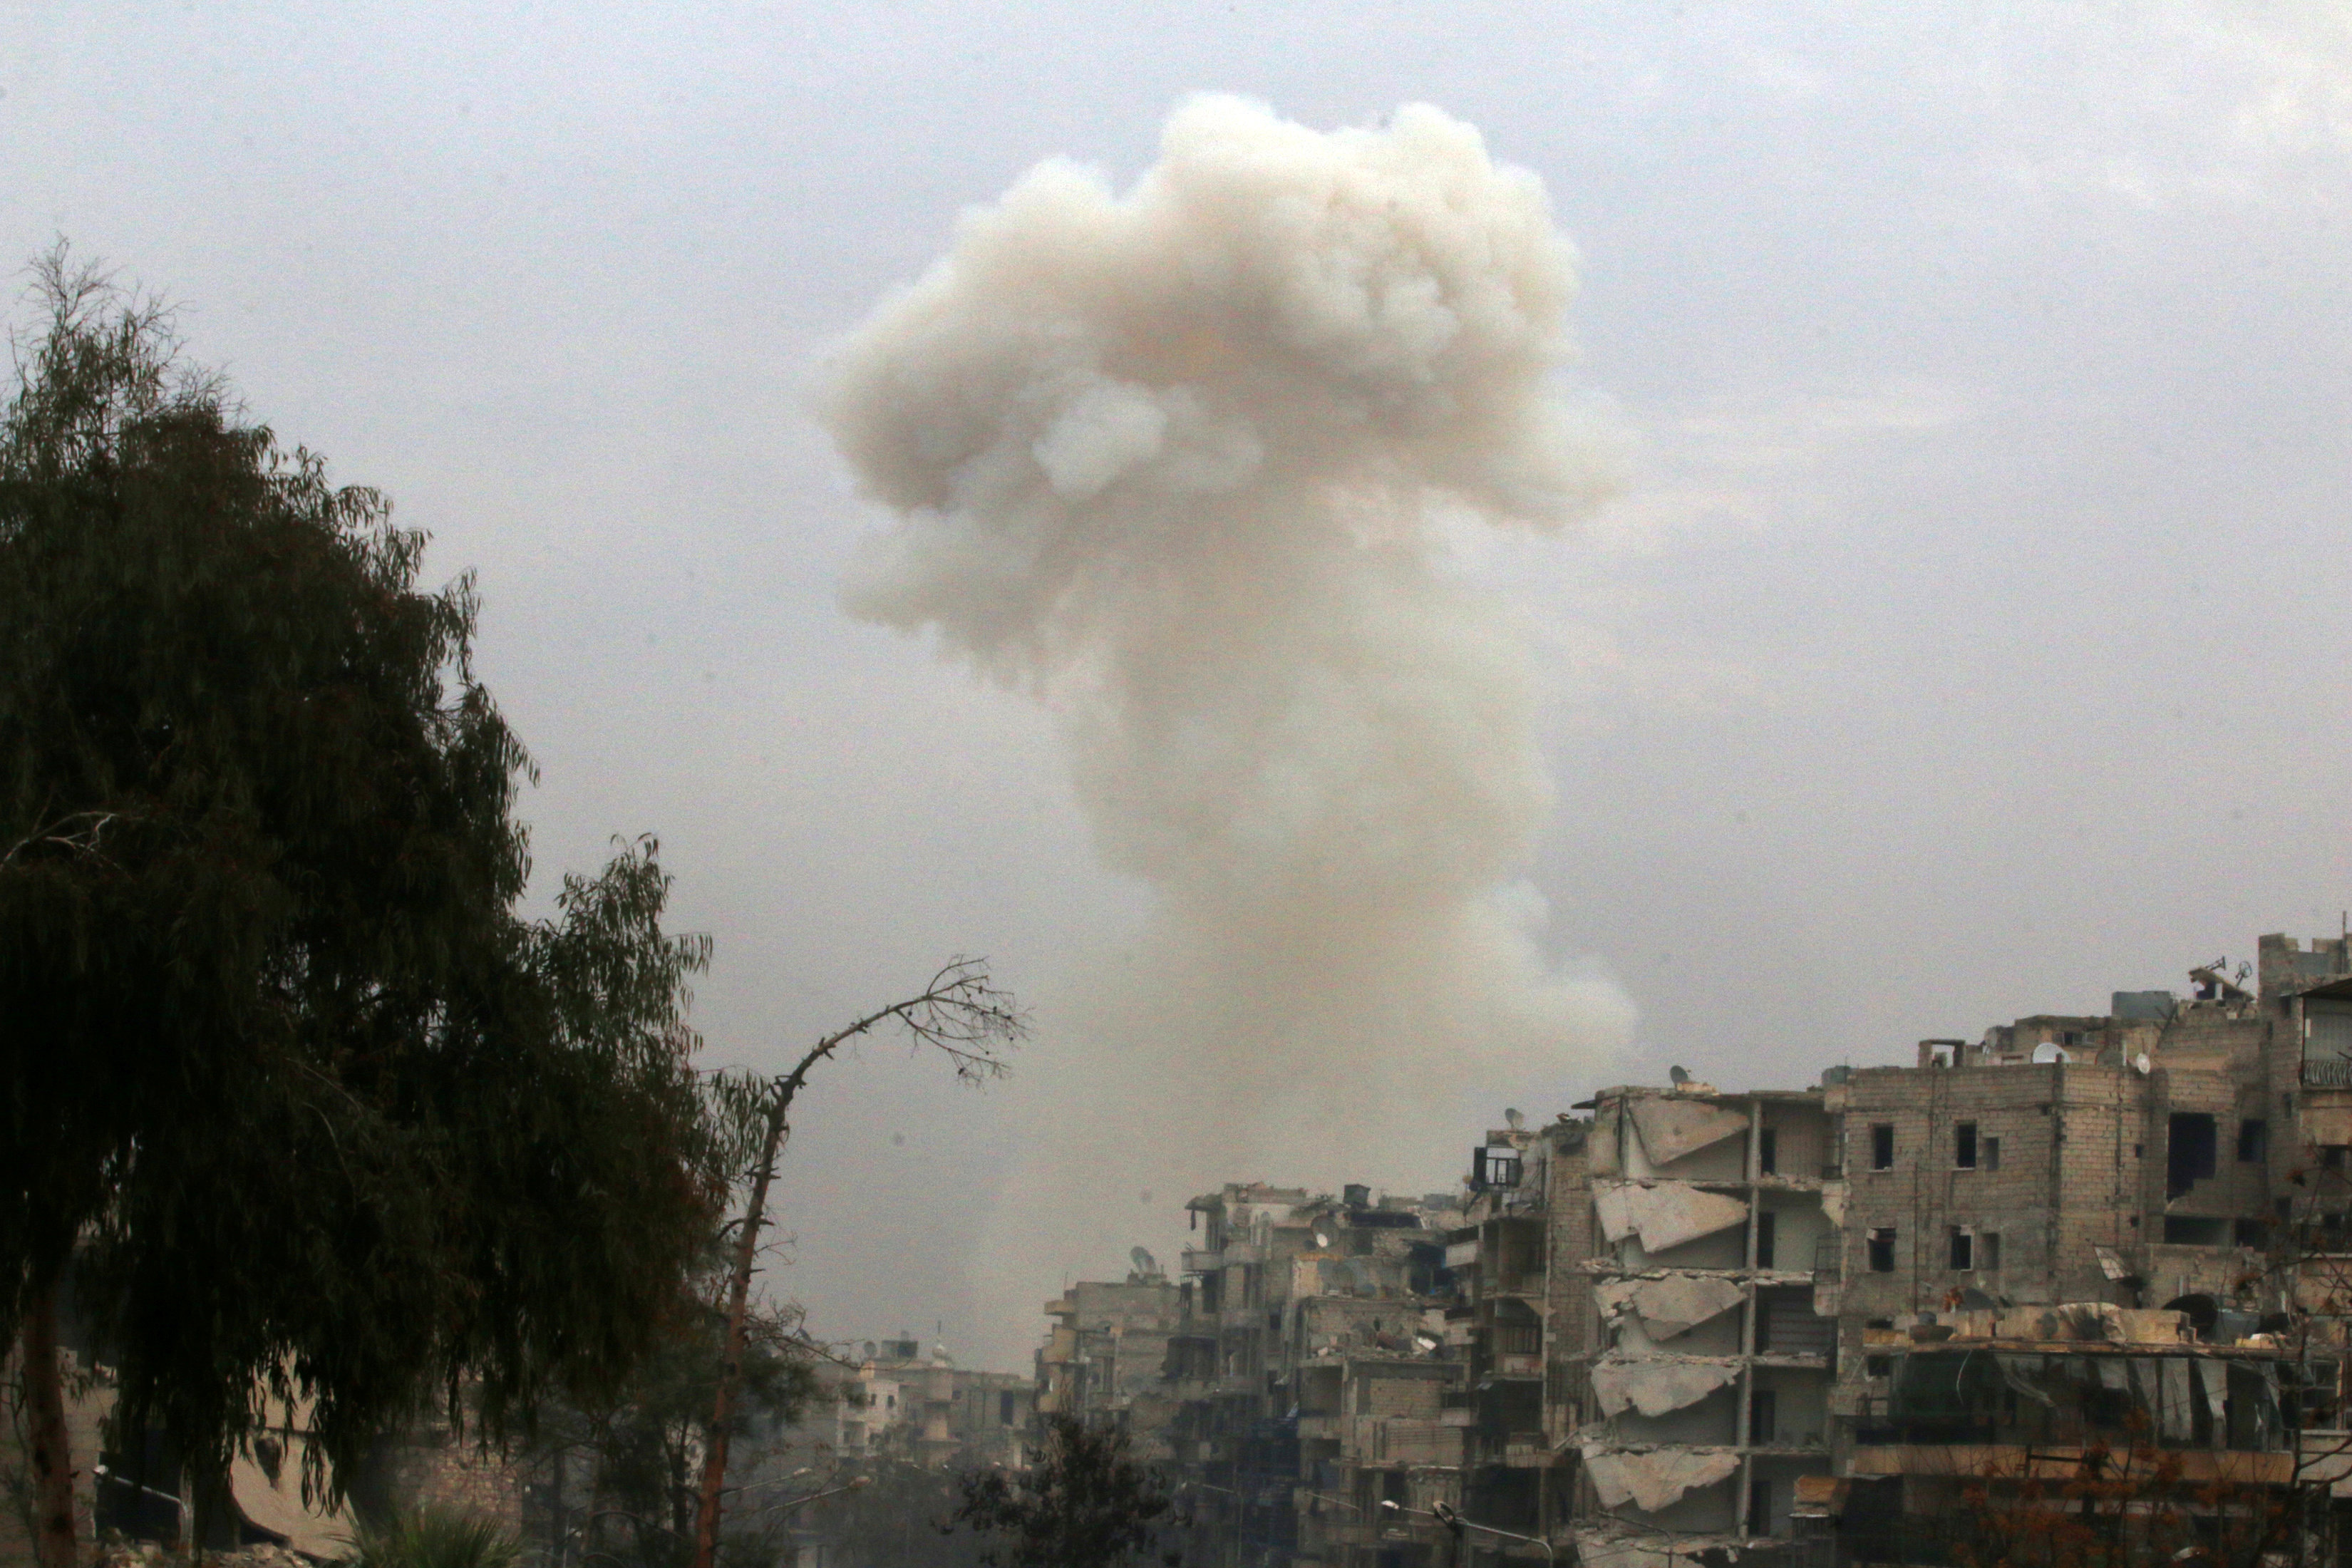 Τουλάχιστον 25 άμαχοι, παιδιά ανάμεσά τους, νεκροί σε επιδρομές στη Συρία